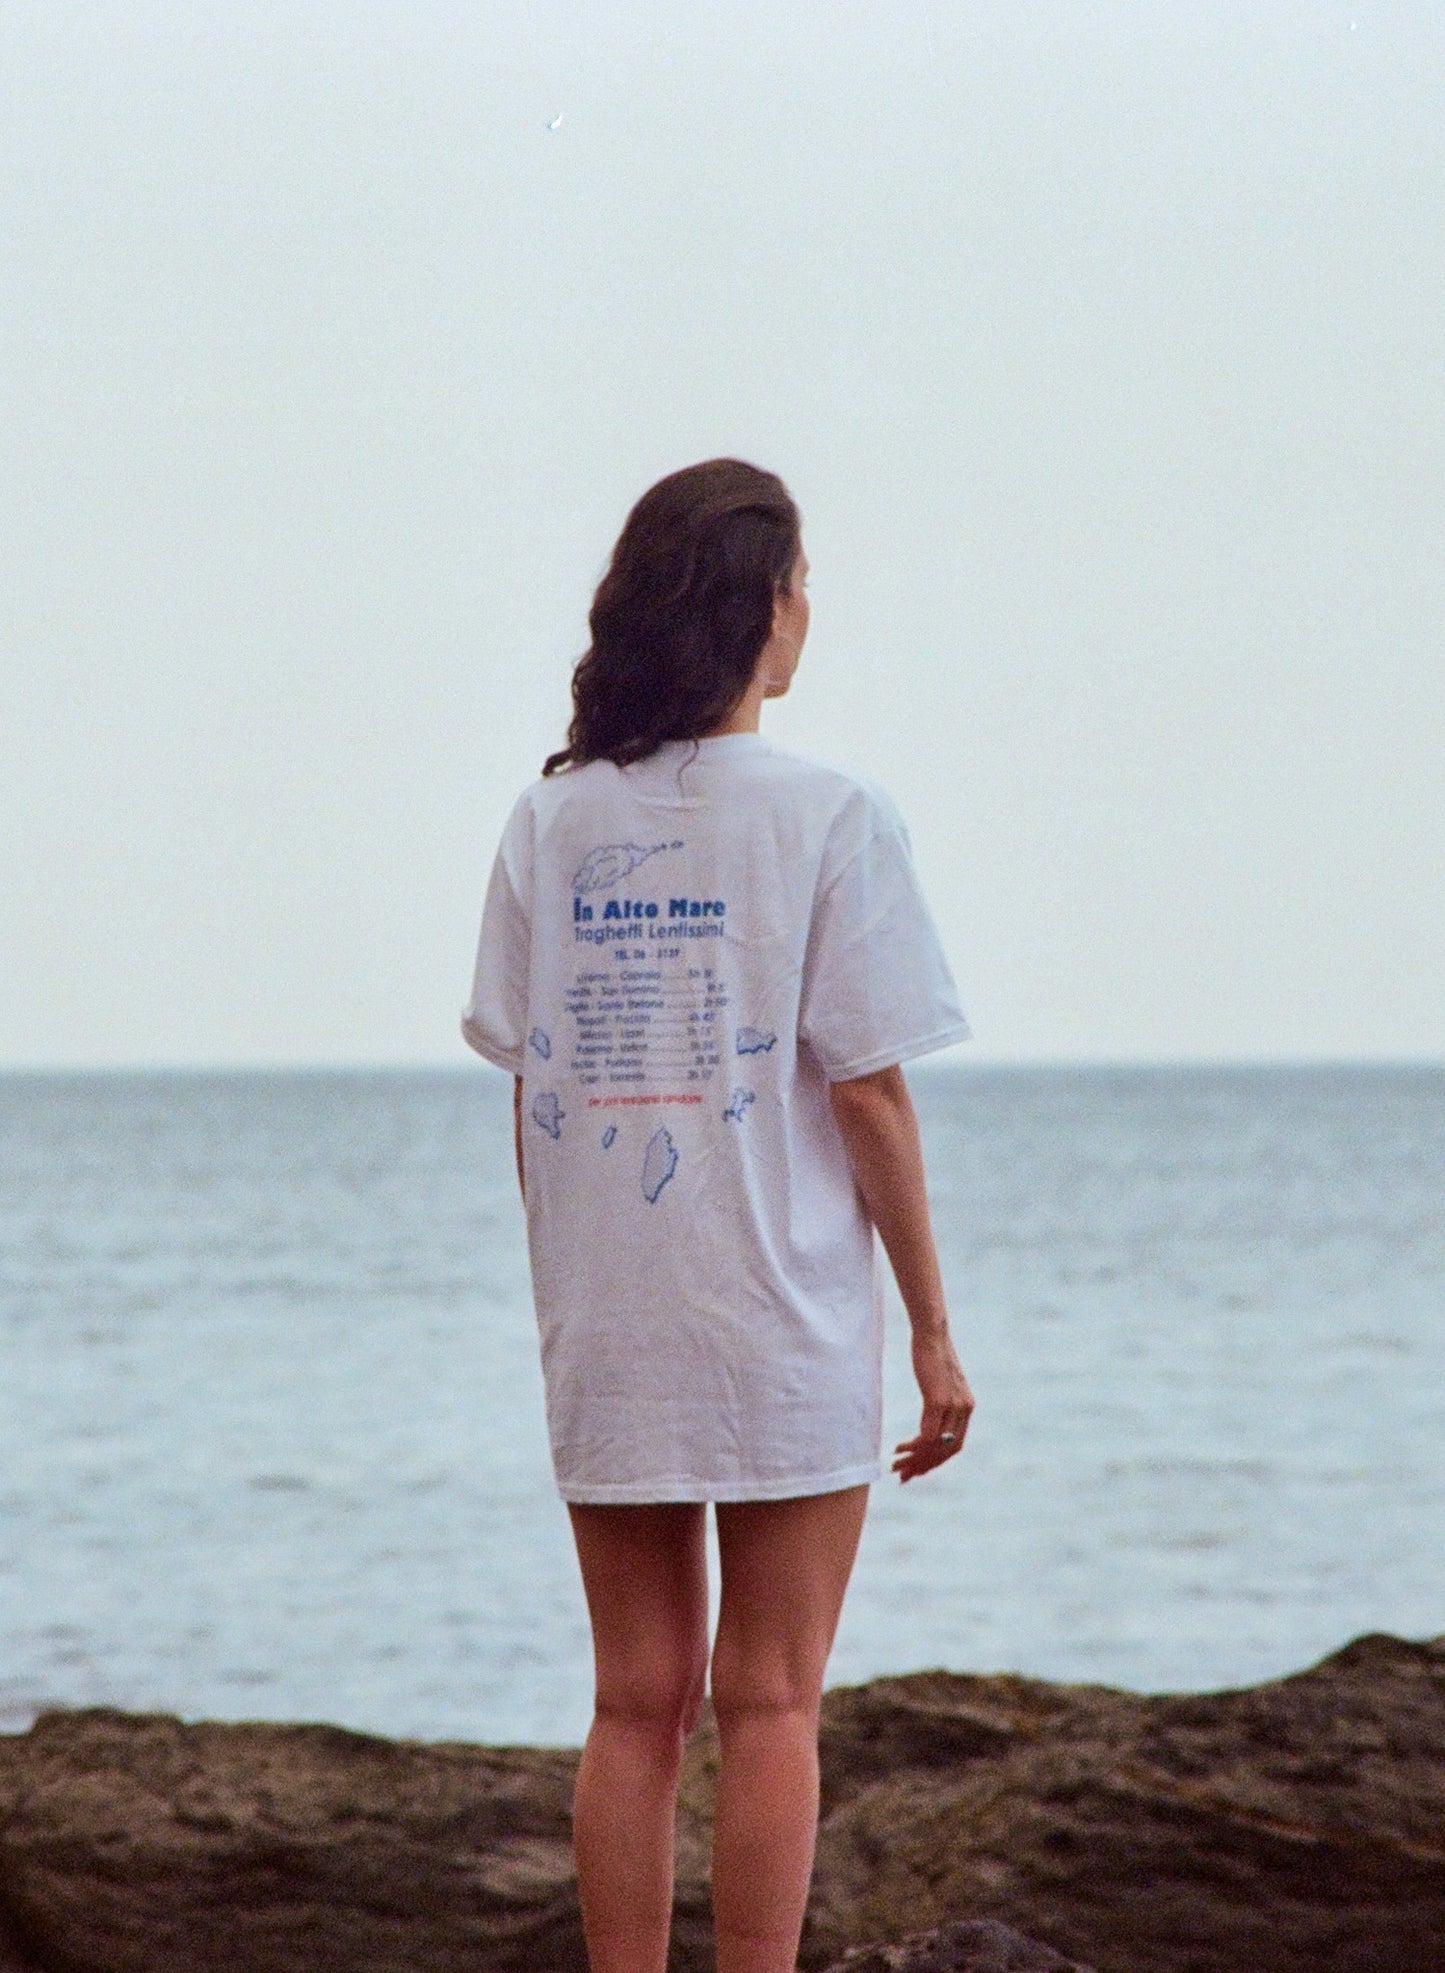 T-shirt In alto mare, Loredana Bertè dettaglio back